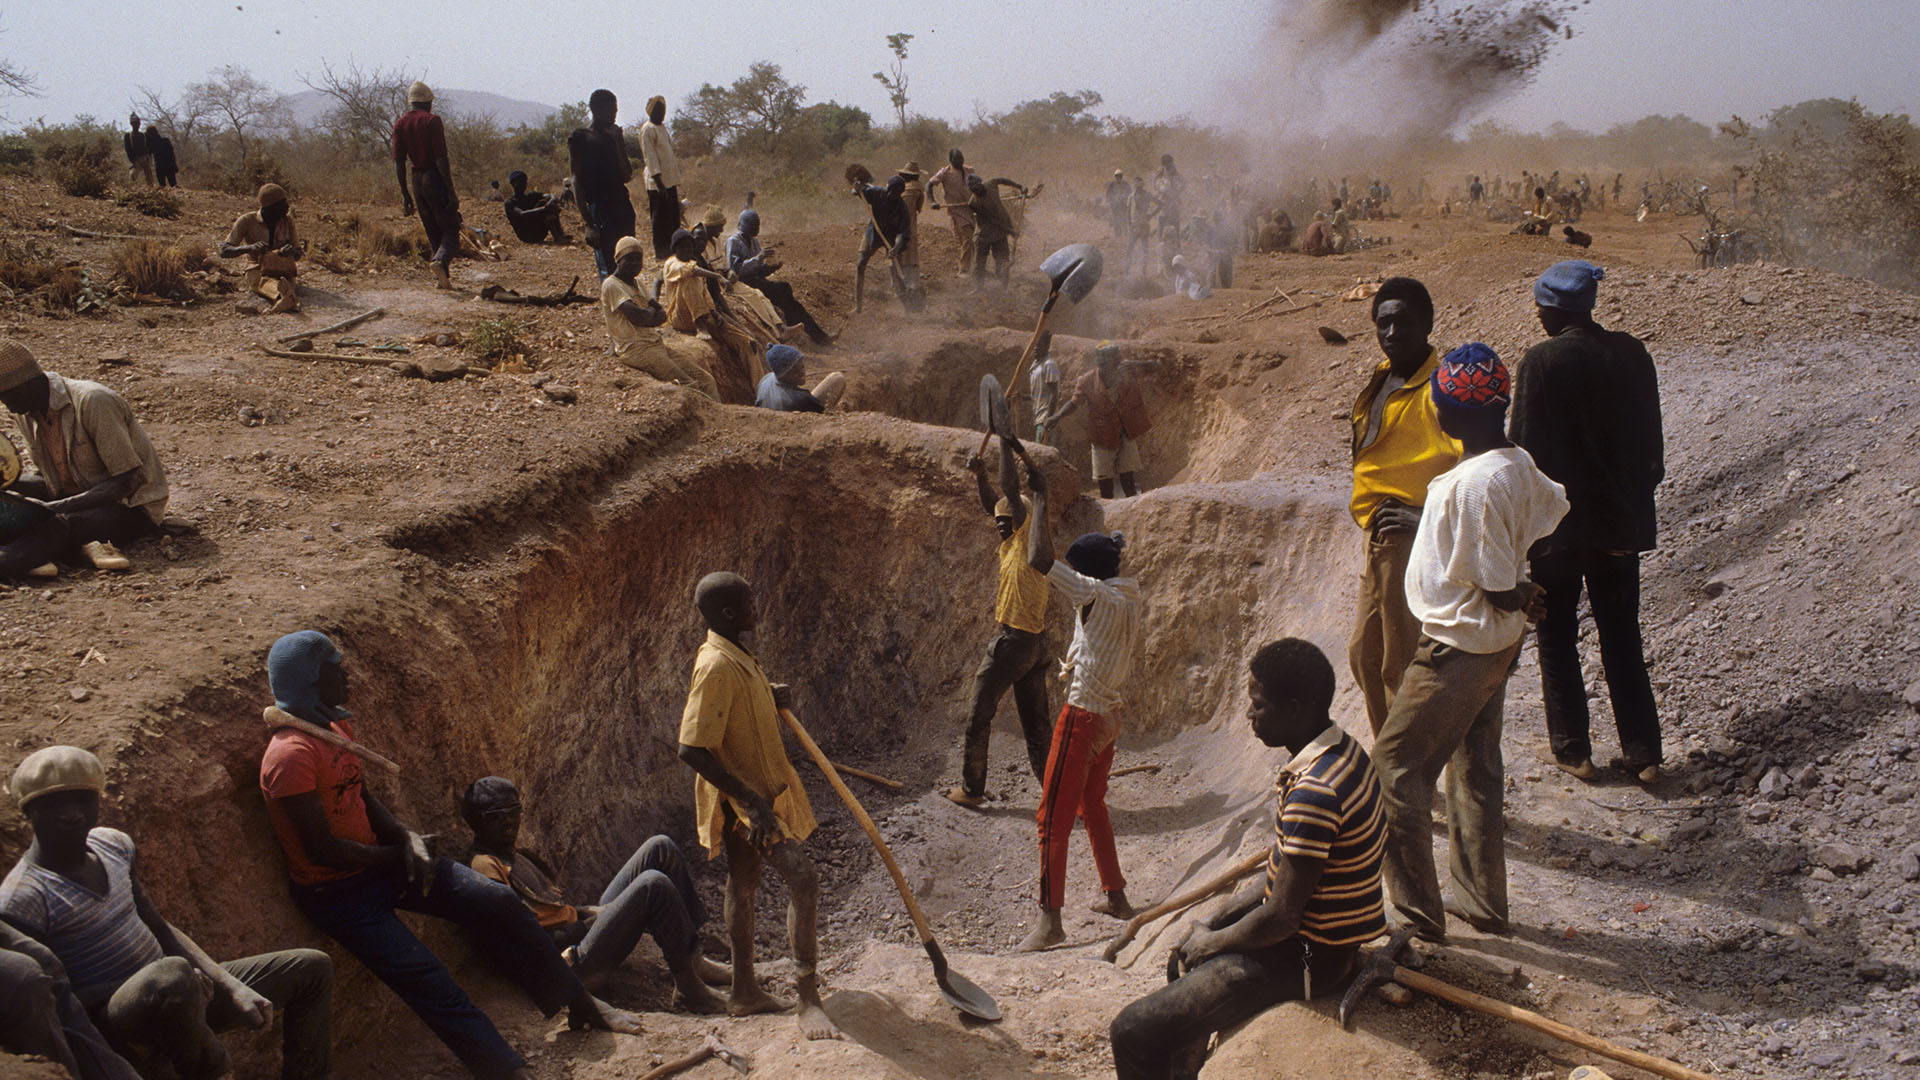 Menschen graben in Burkina Faso nach Gold. | imago images/Environmental Image